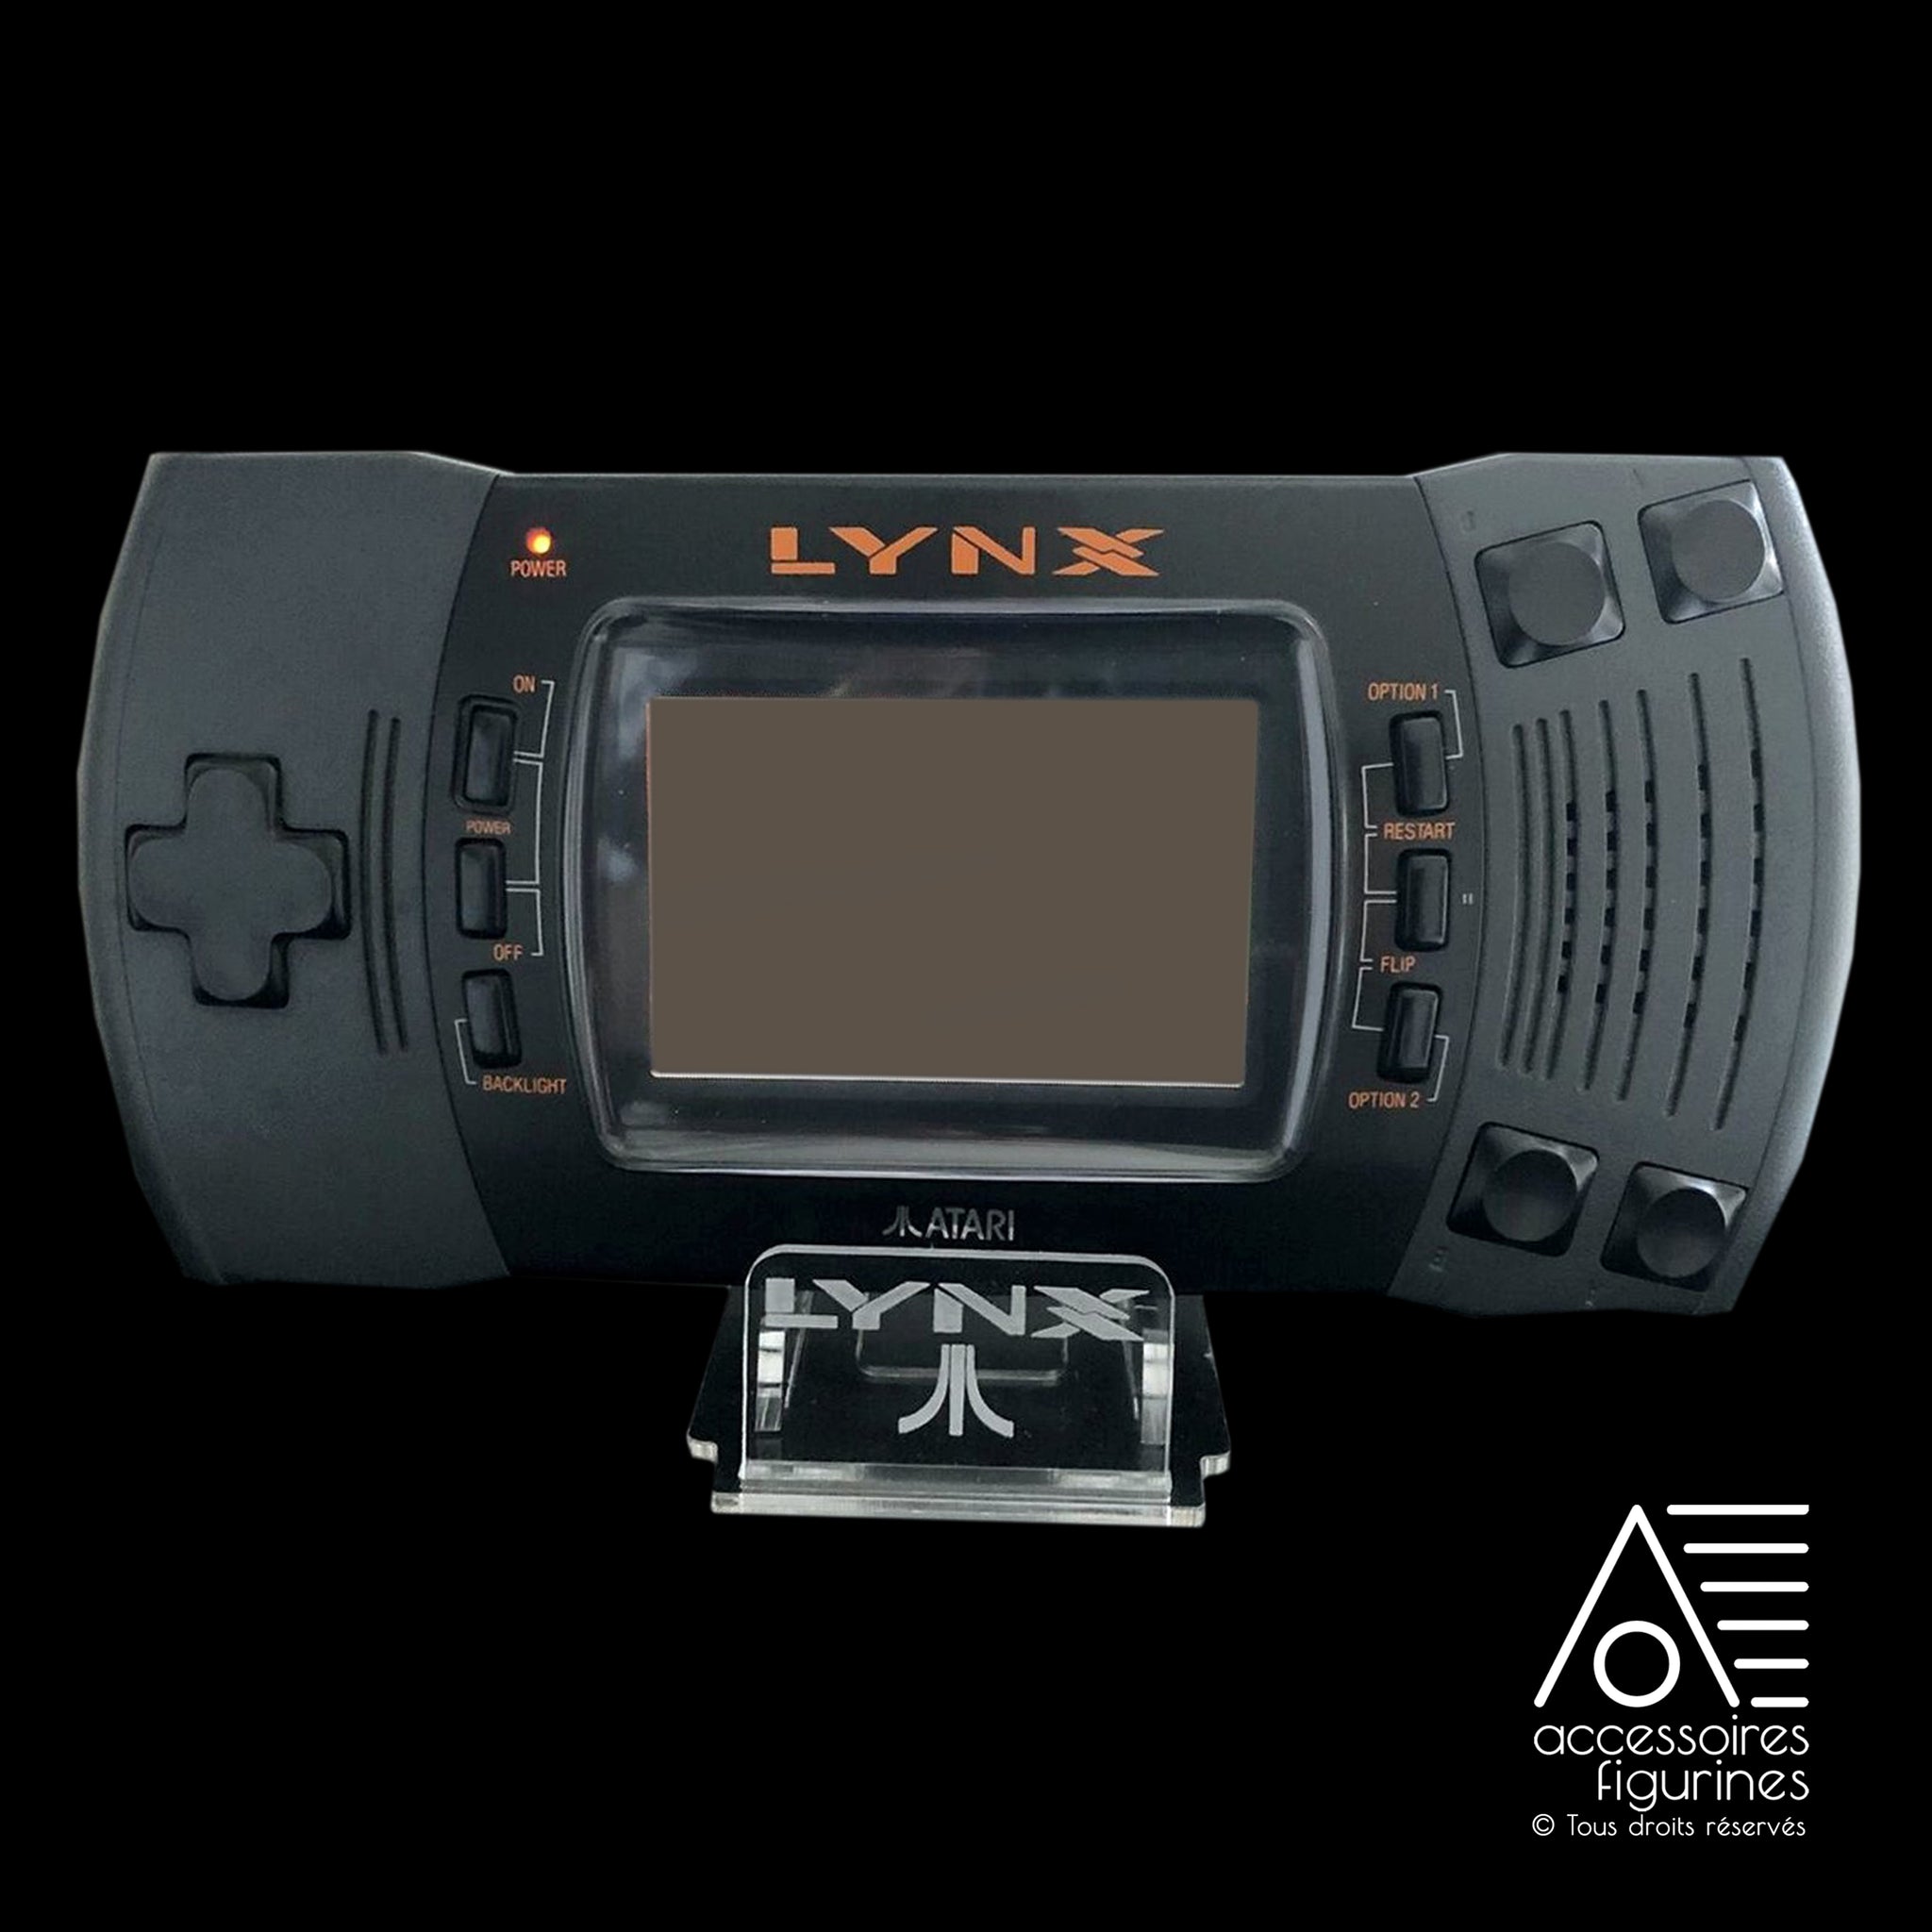 Atari Lynx II Support